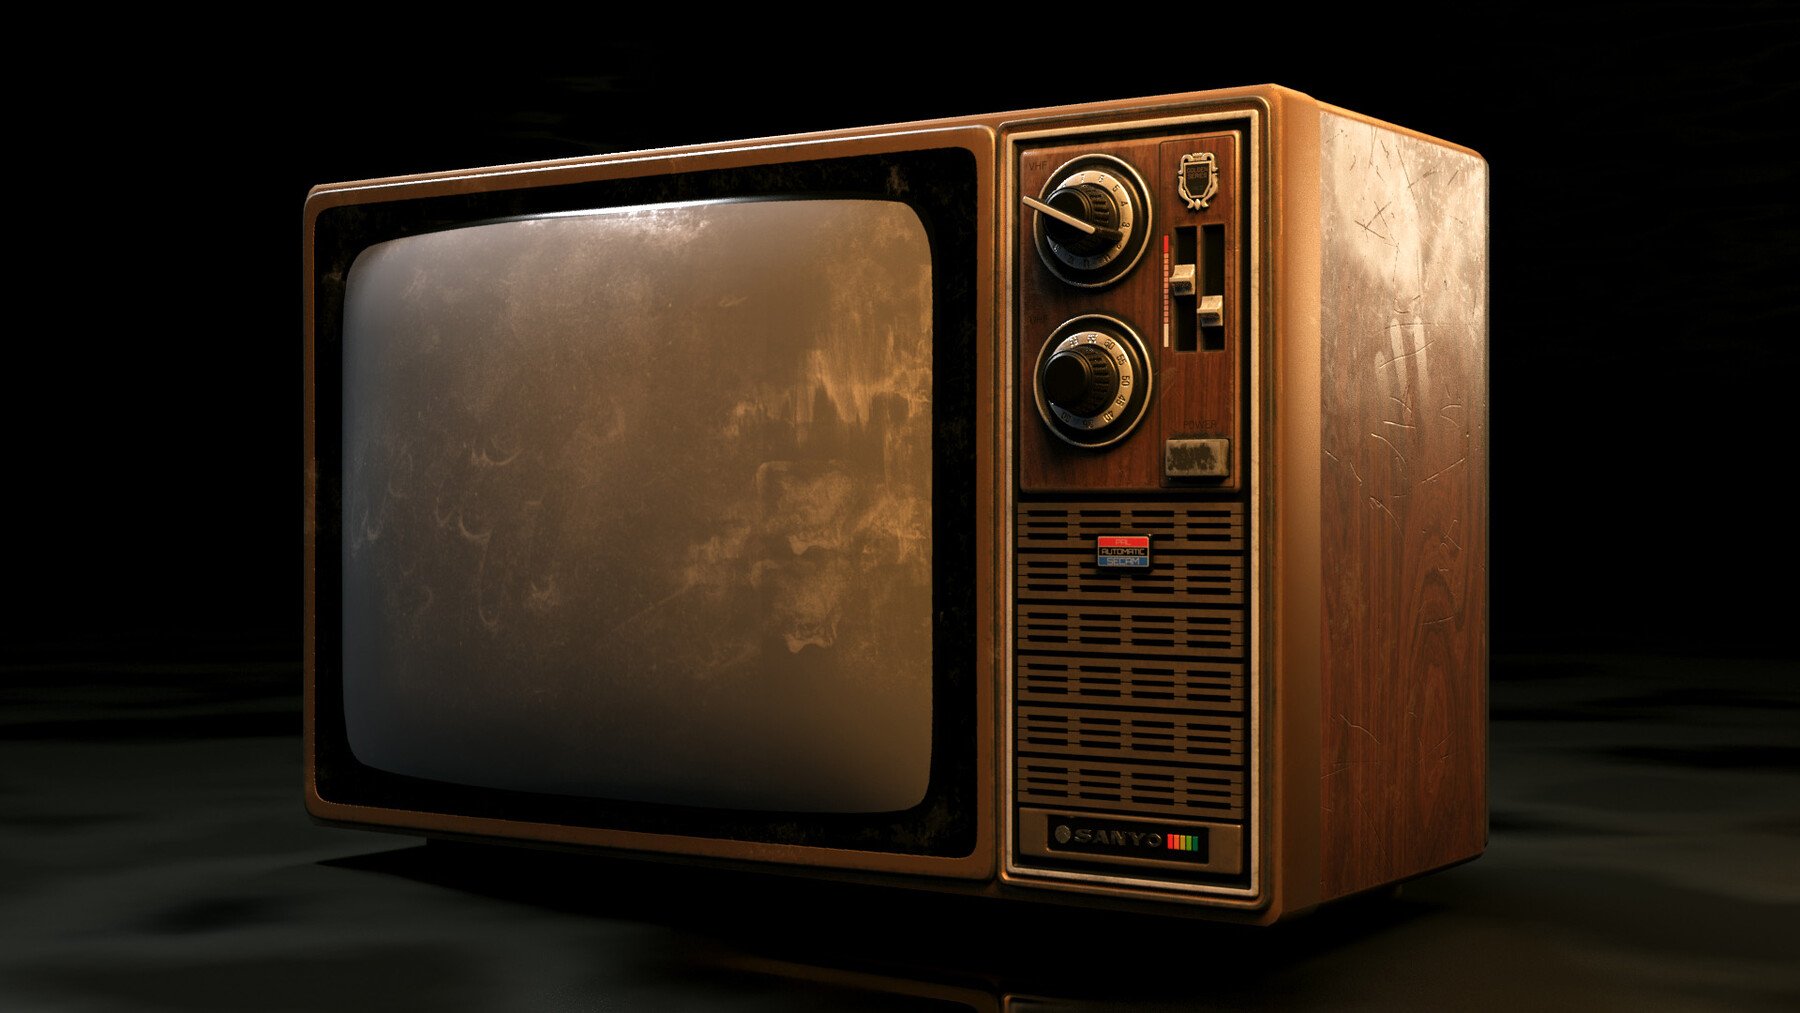 Телевизор кроссовер. Old TV 3d model. Old TV. 3d render old TV. Old tv shows